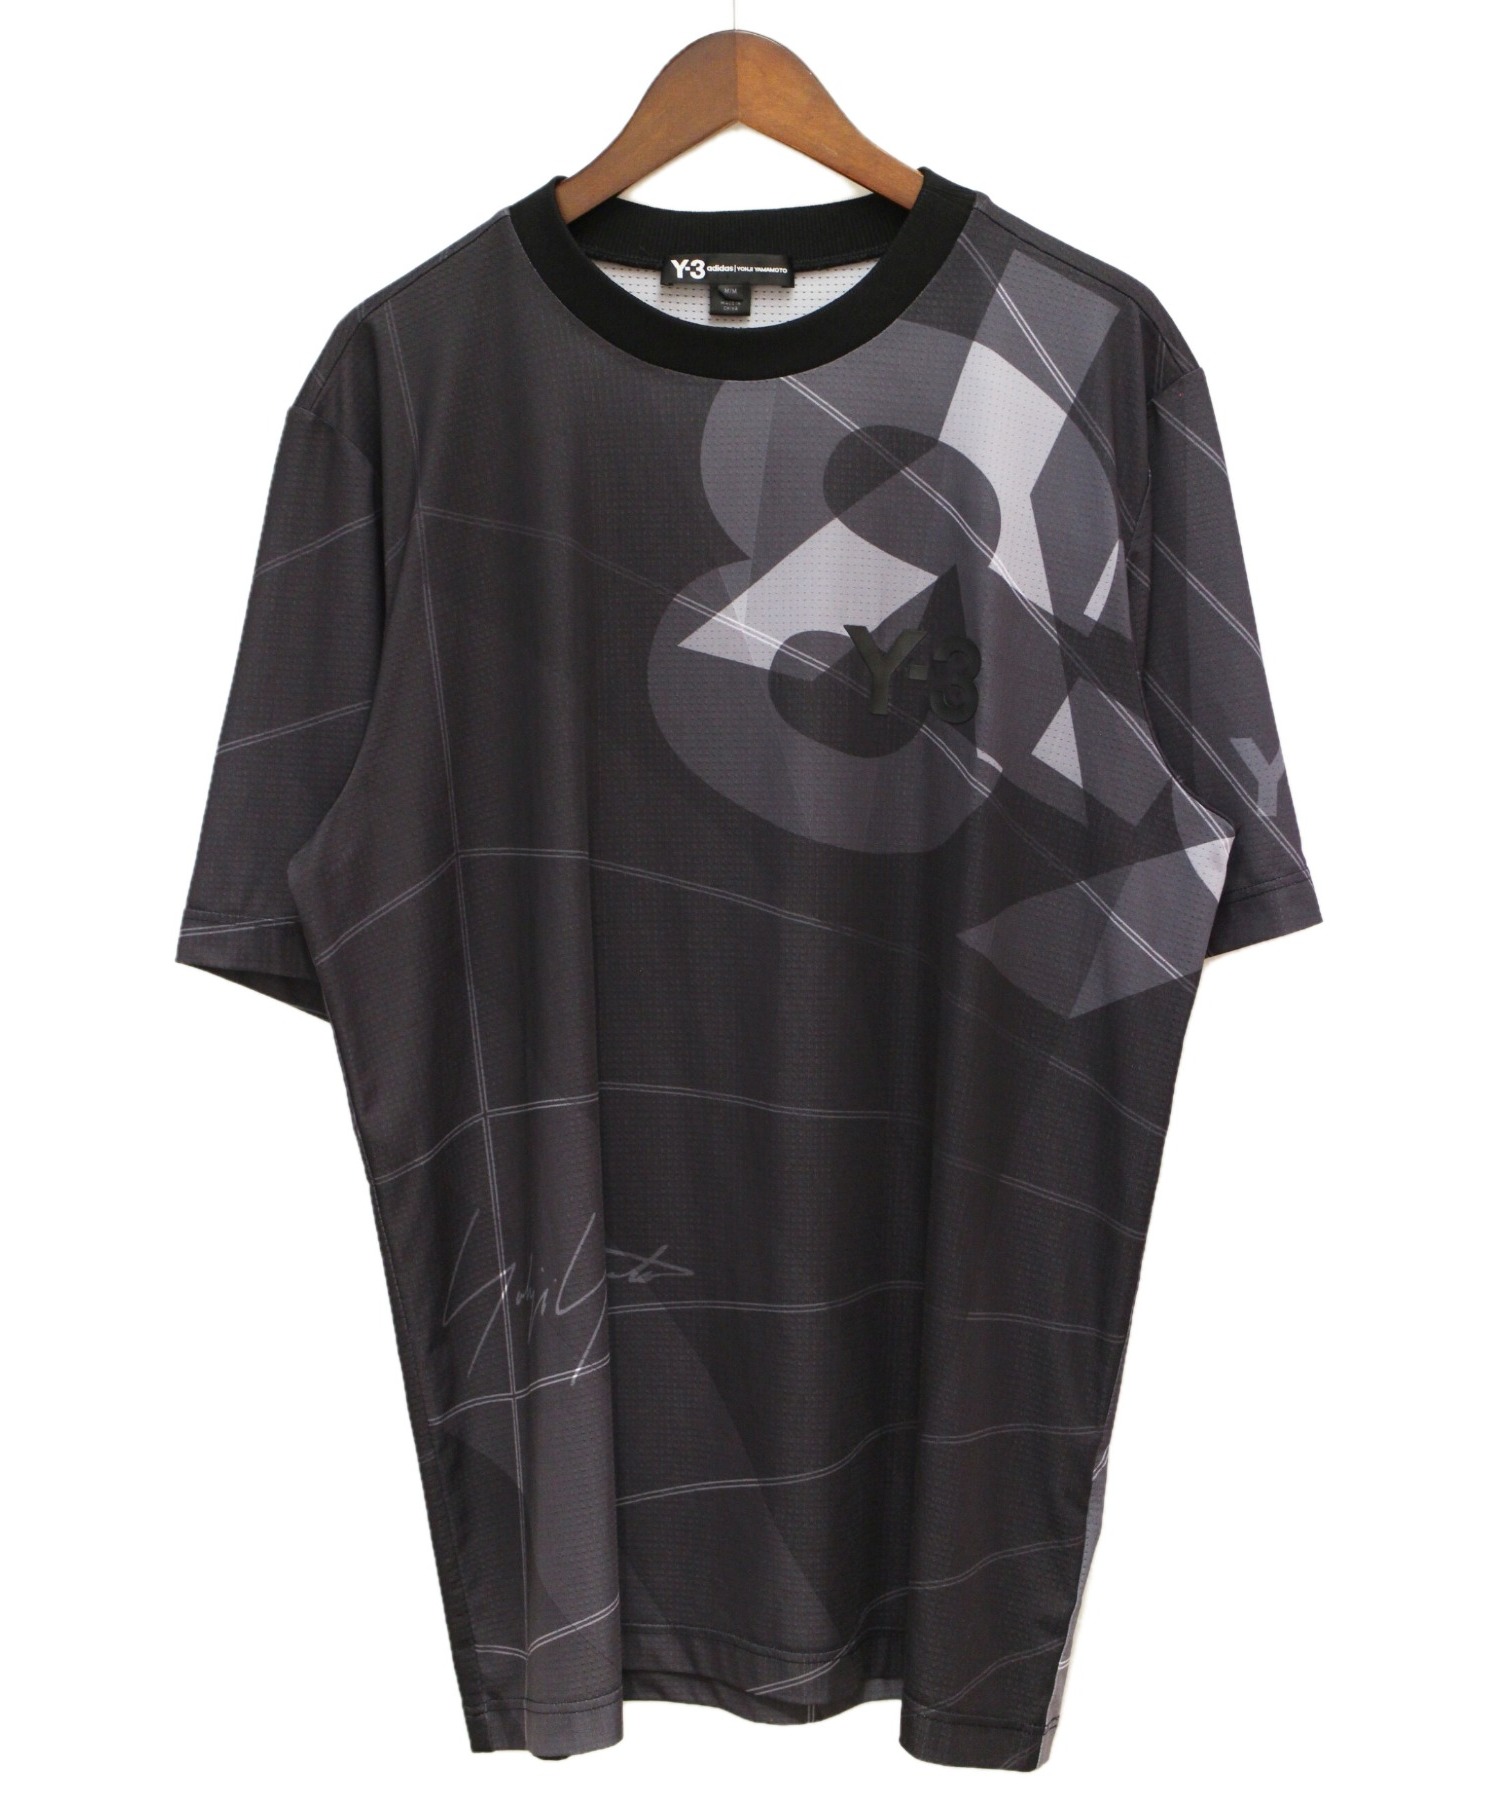 Y-3 (ワイスリー) フットボールメッシュTシャツ ブラック サイズ:M